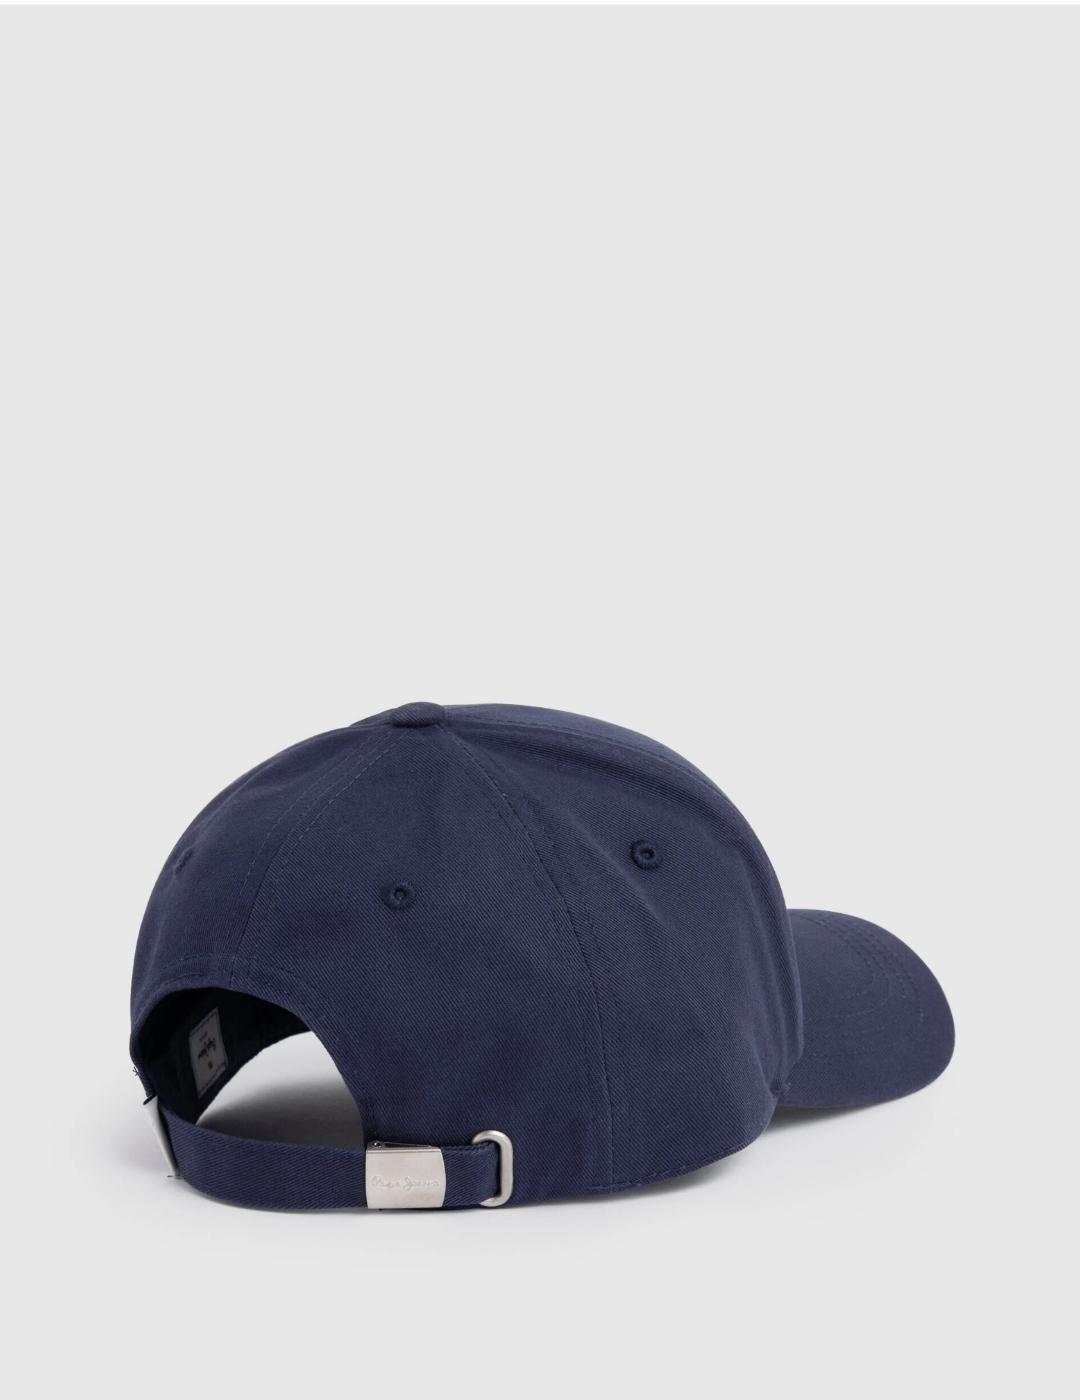 Gorra azul hombre básica logo bordado